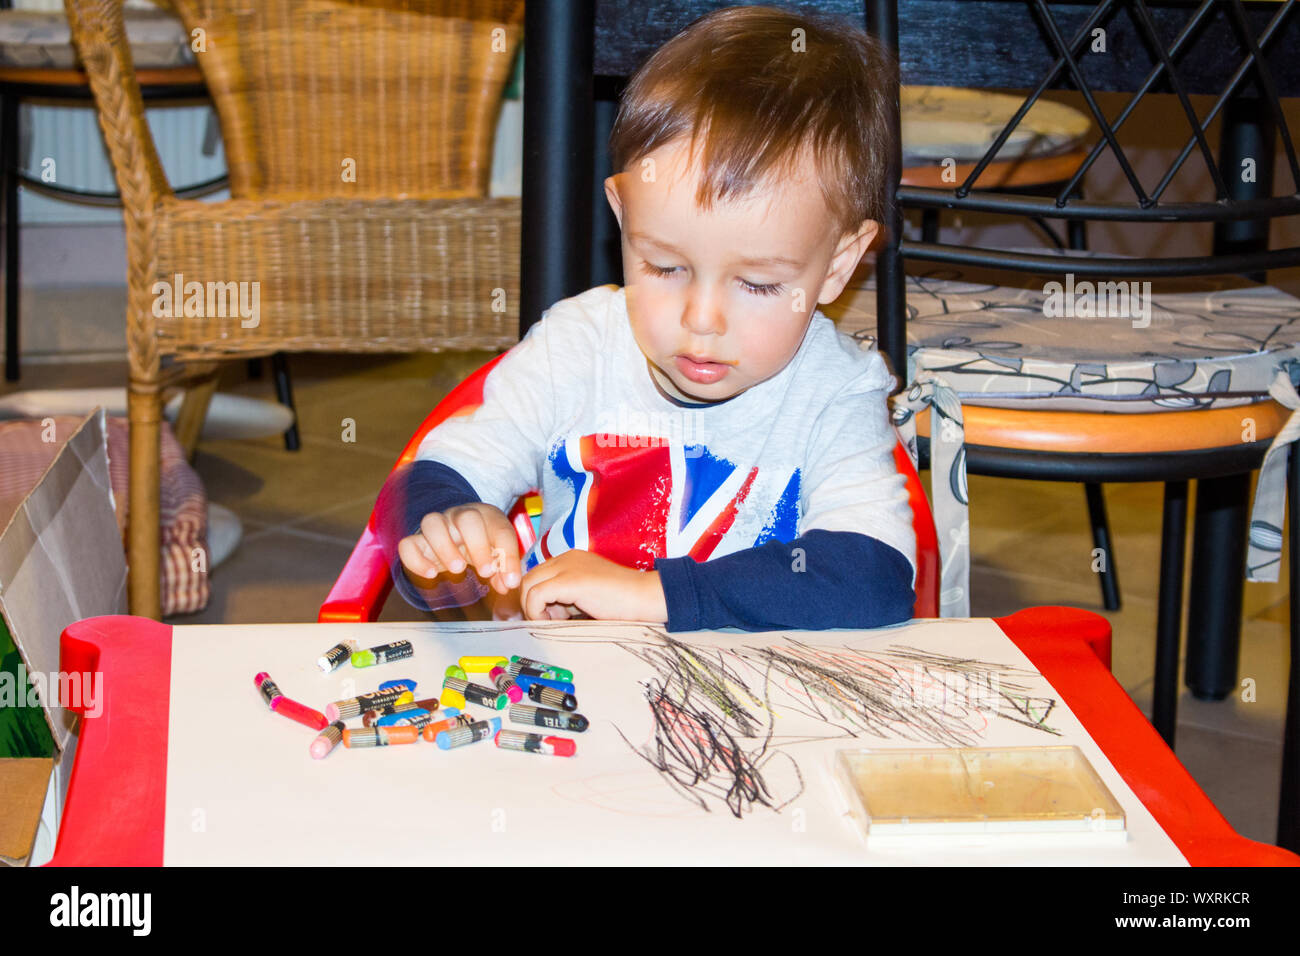 Der 3-jährige Junge, Kind, lernt zu Hause mit farbigen Buntstiften am Tisch zu zeichnen Stockfoto